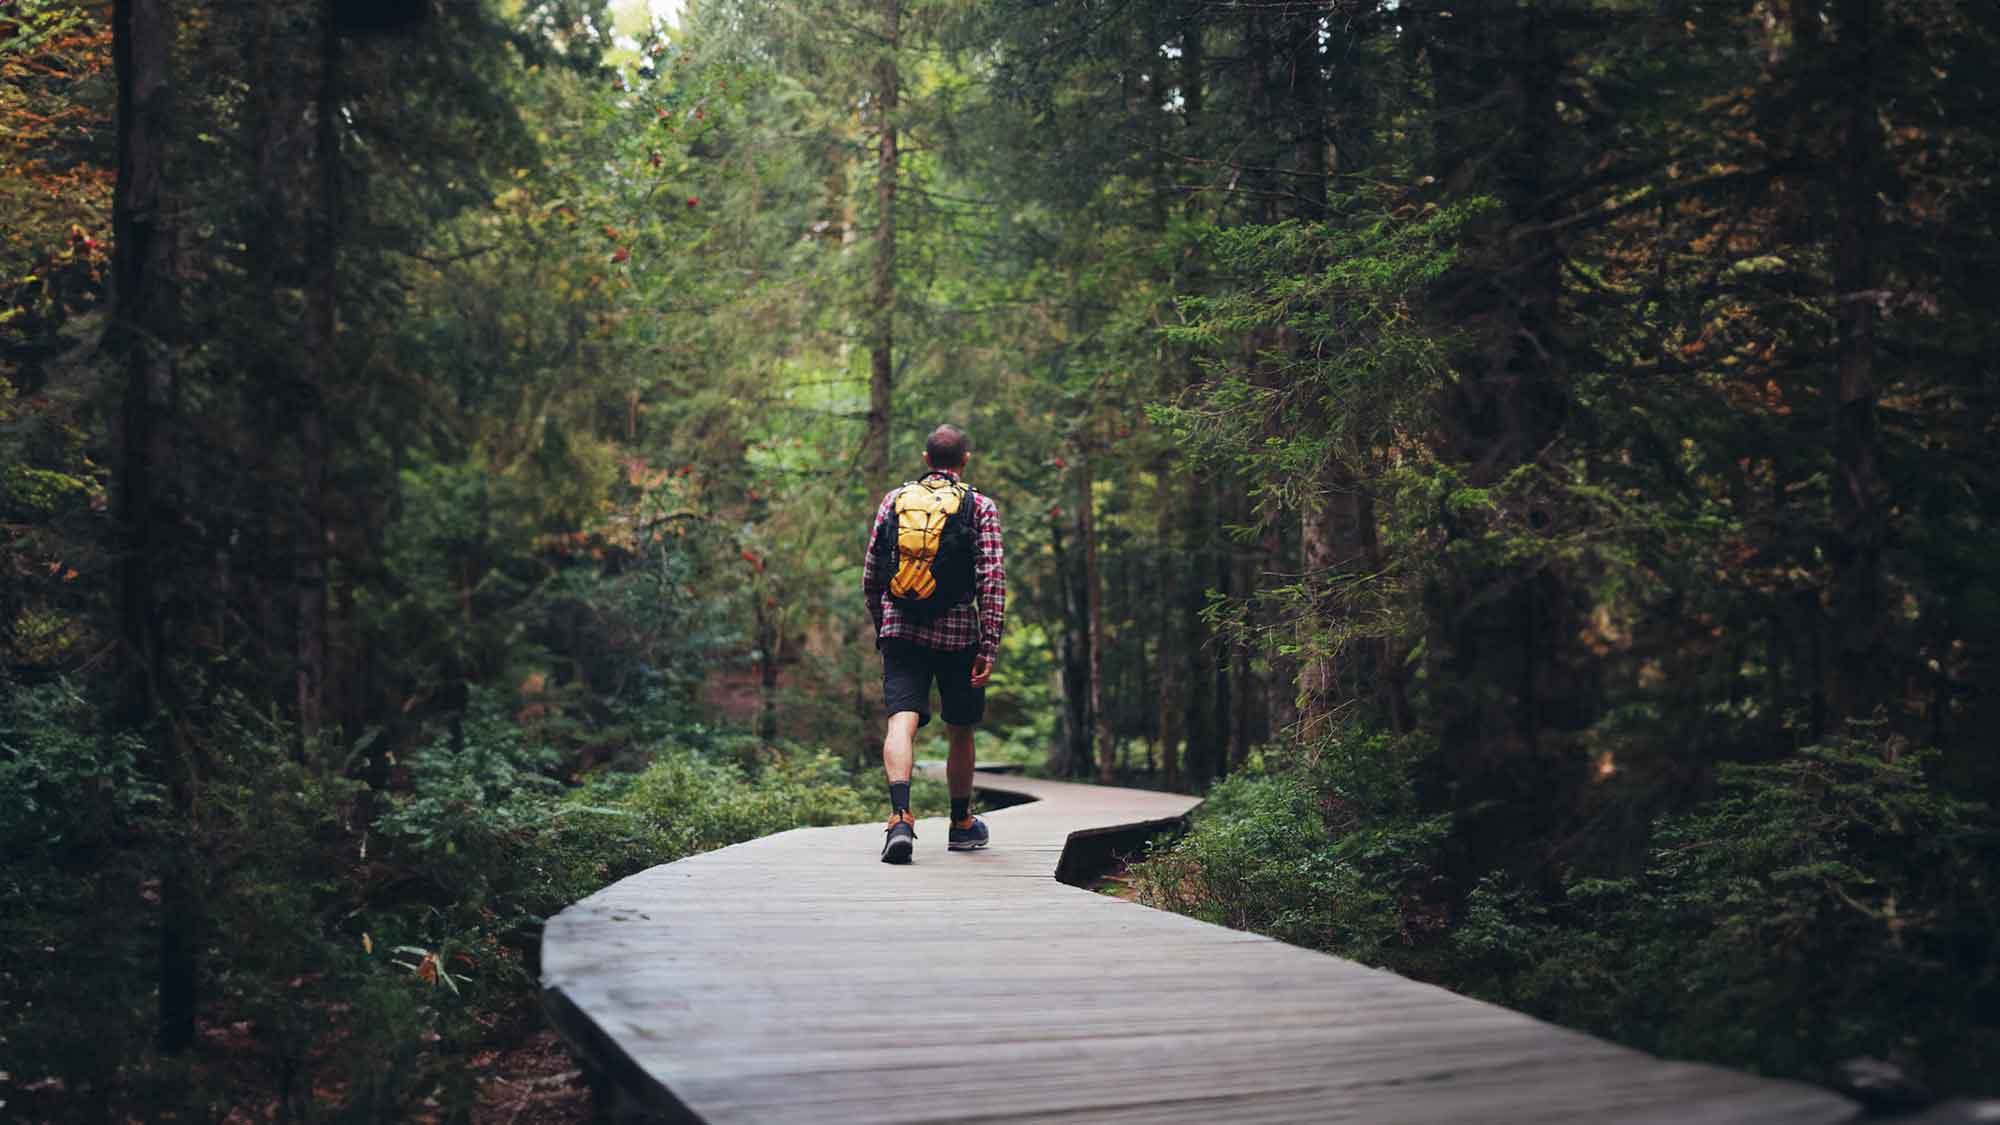 Projekt des Deutschen Wanderverbands untersucht Nutzungskonflikte im Wald